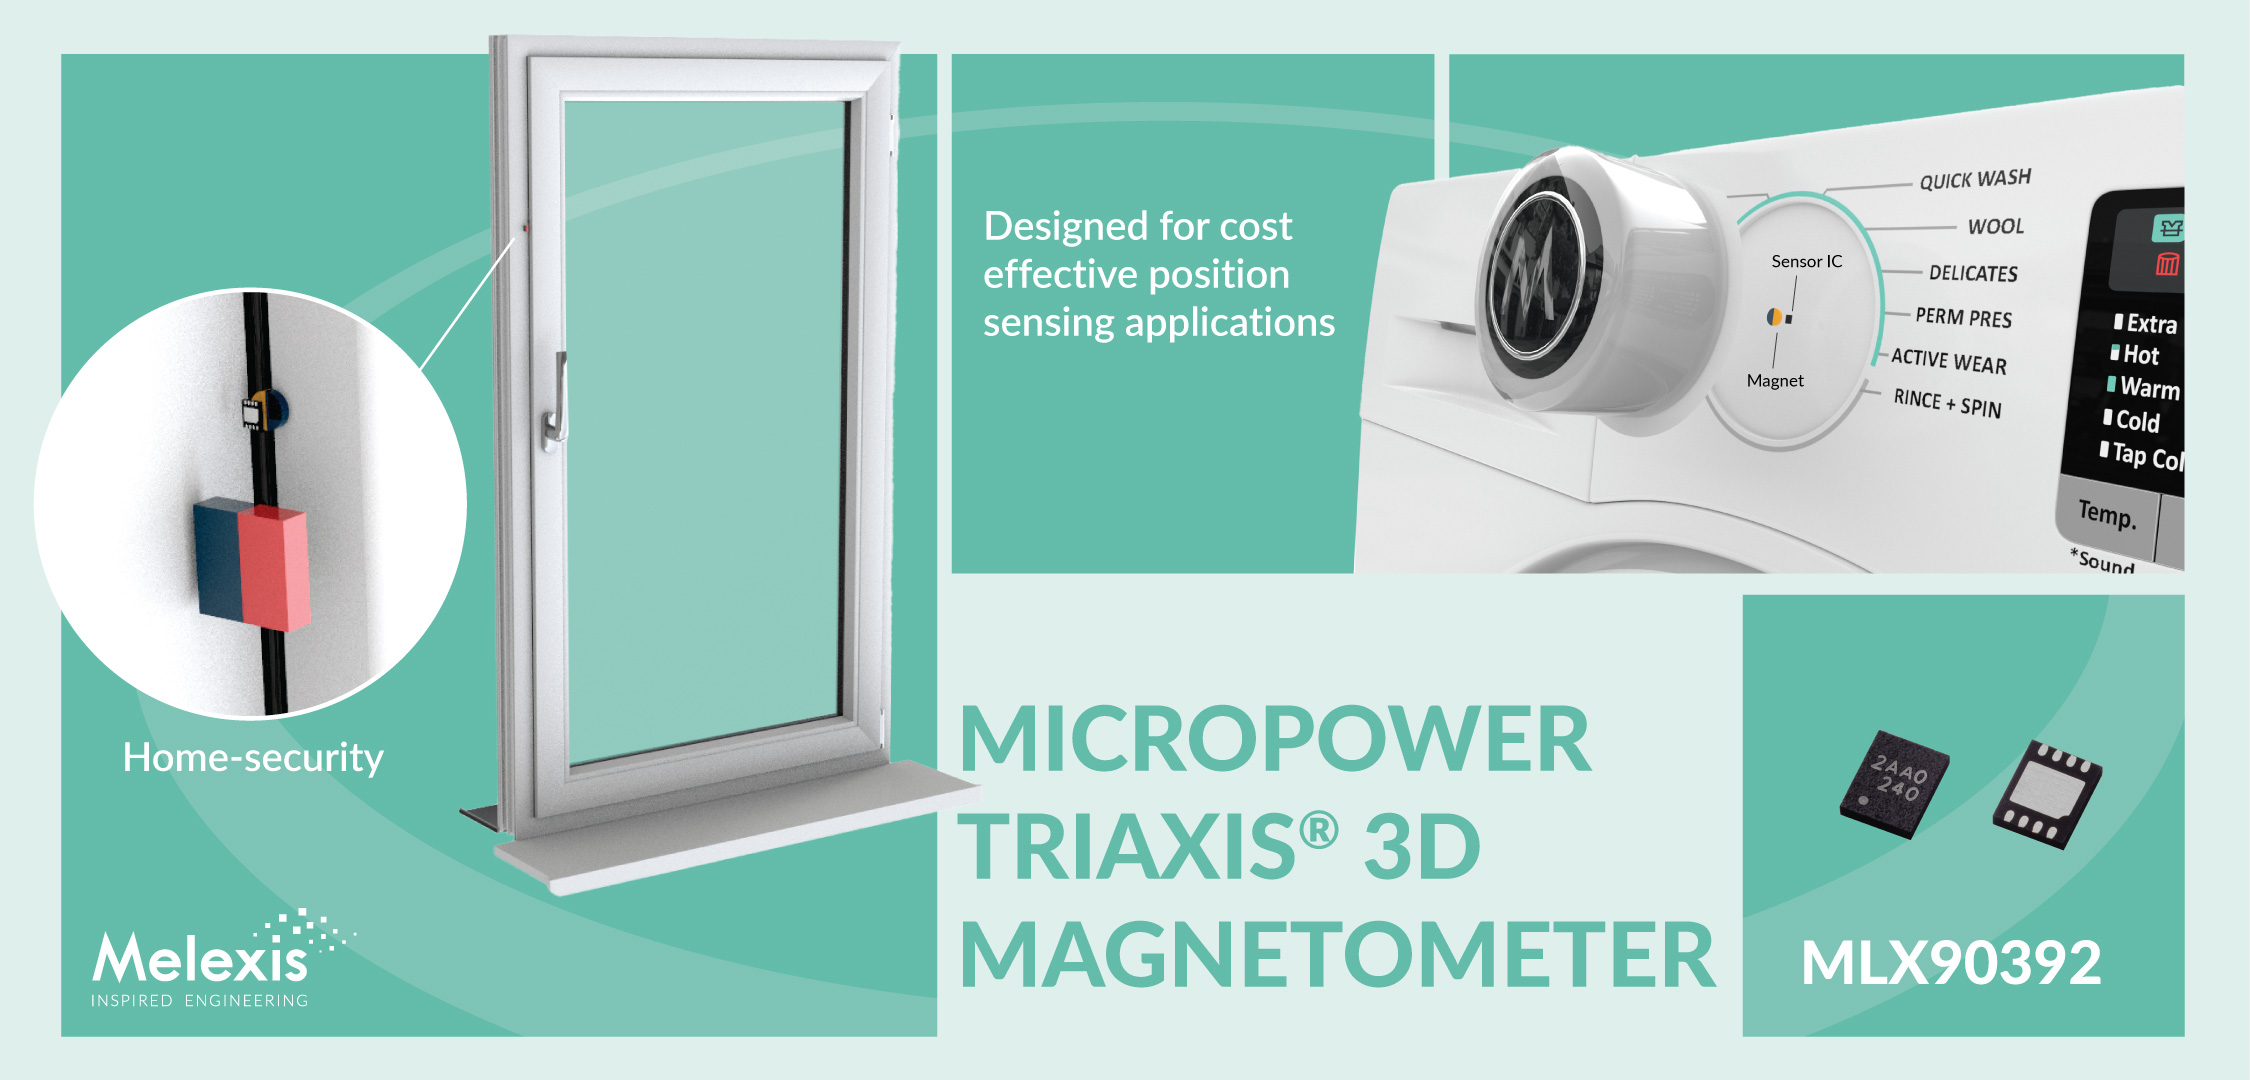 Melexis 推出面向消费类应用的紧凑型低压 3D 磁力计